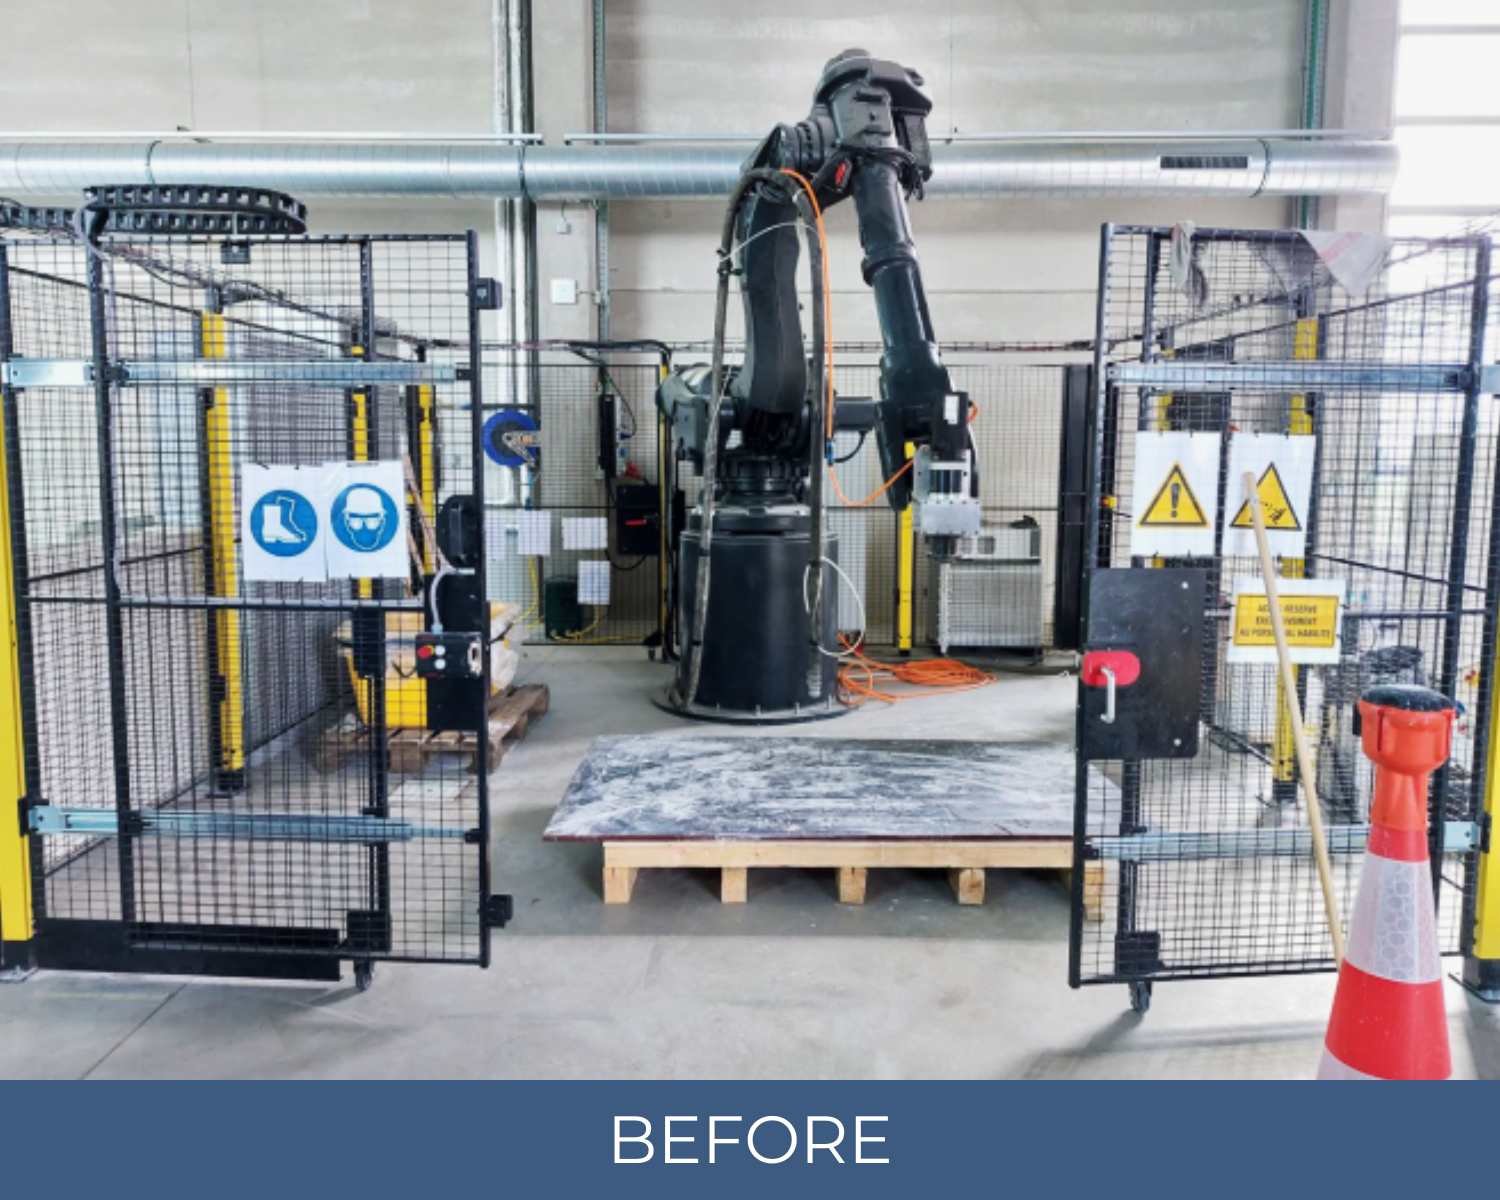 Upgrade d'un robot imprimante 3D béton offrant une plus grande zone de travail, une meilleure visibilité et une sécurité accrue.